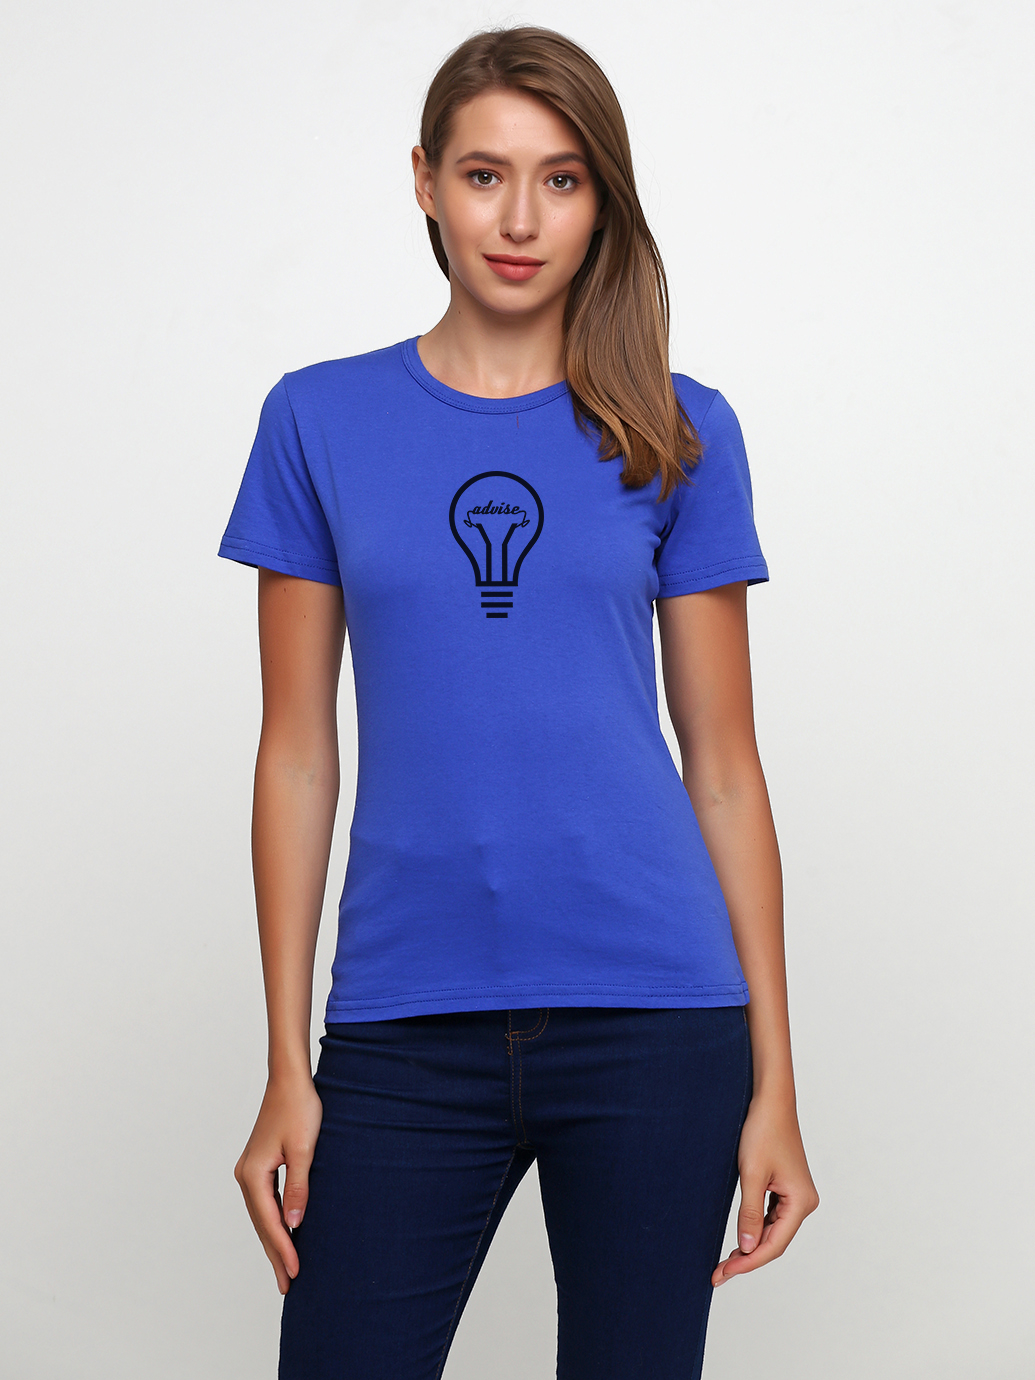 S 19 j. Синяя однотонная футболка женская. Однотонная голубая футболка женская. Футболка синяя женская Натали.